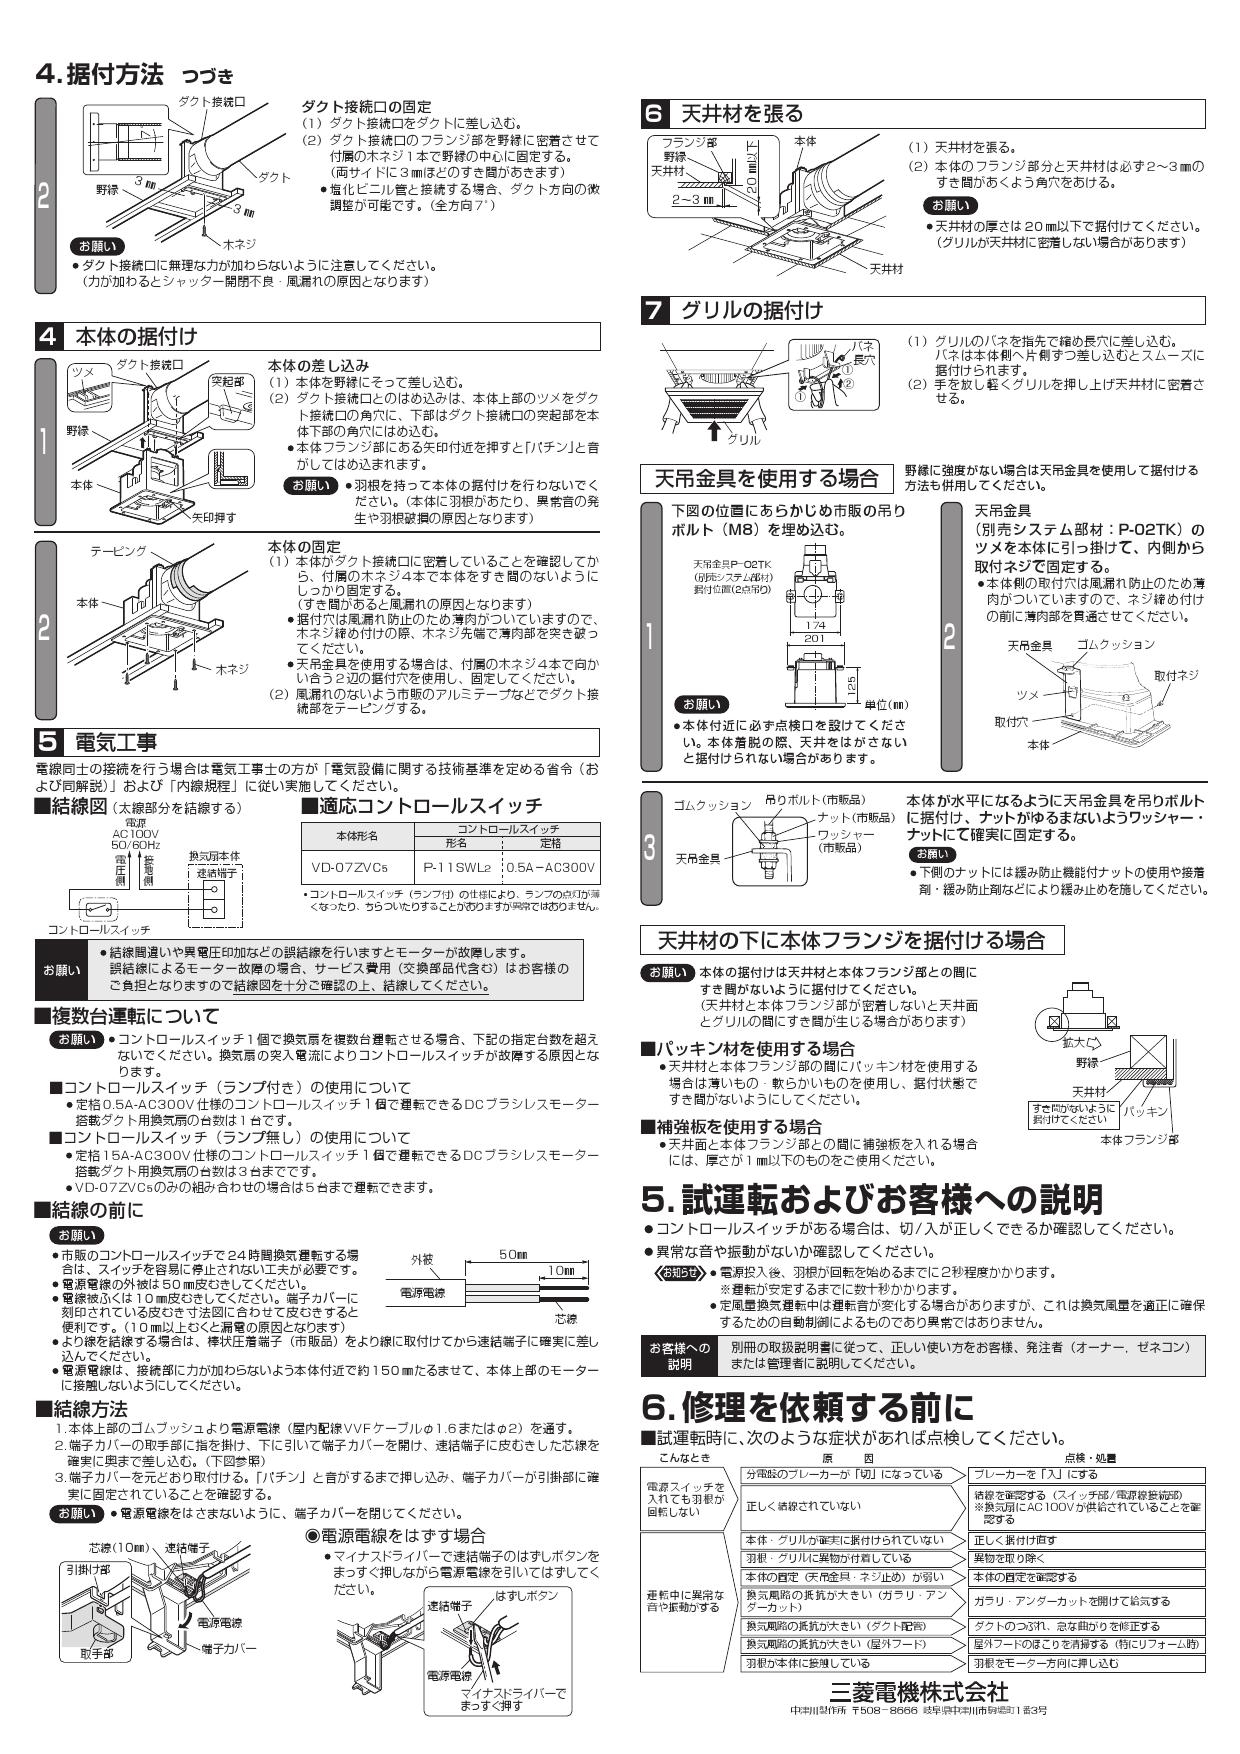 SALE／81%OFF】 三菱電機 天井扇 VD- 07ZVC5